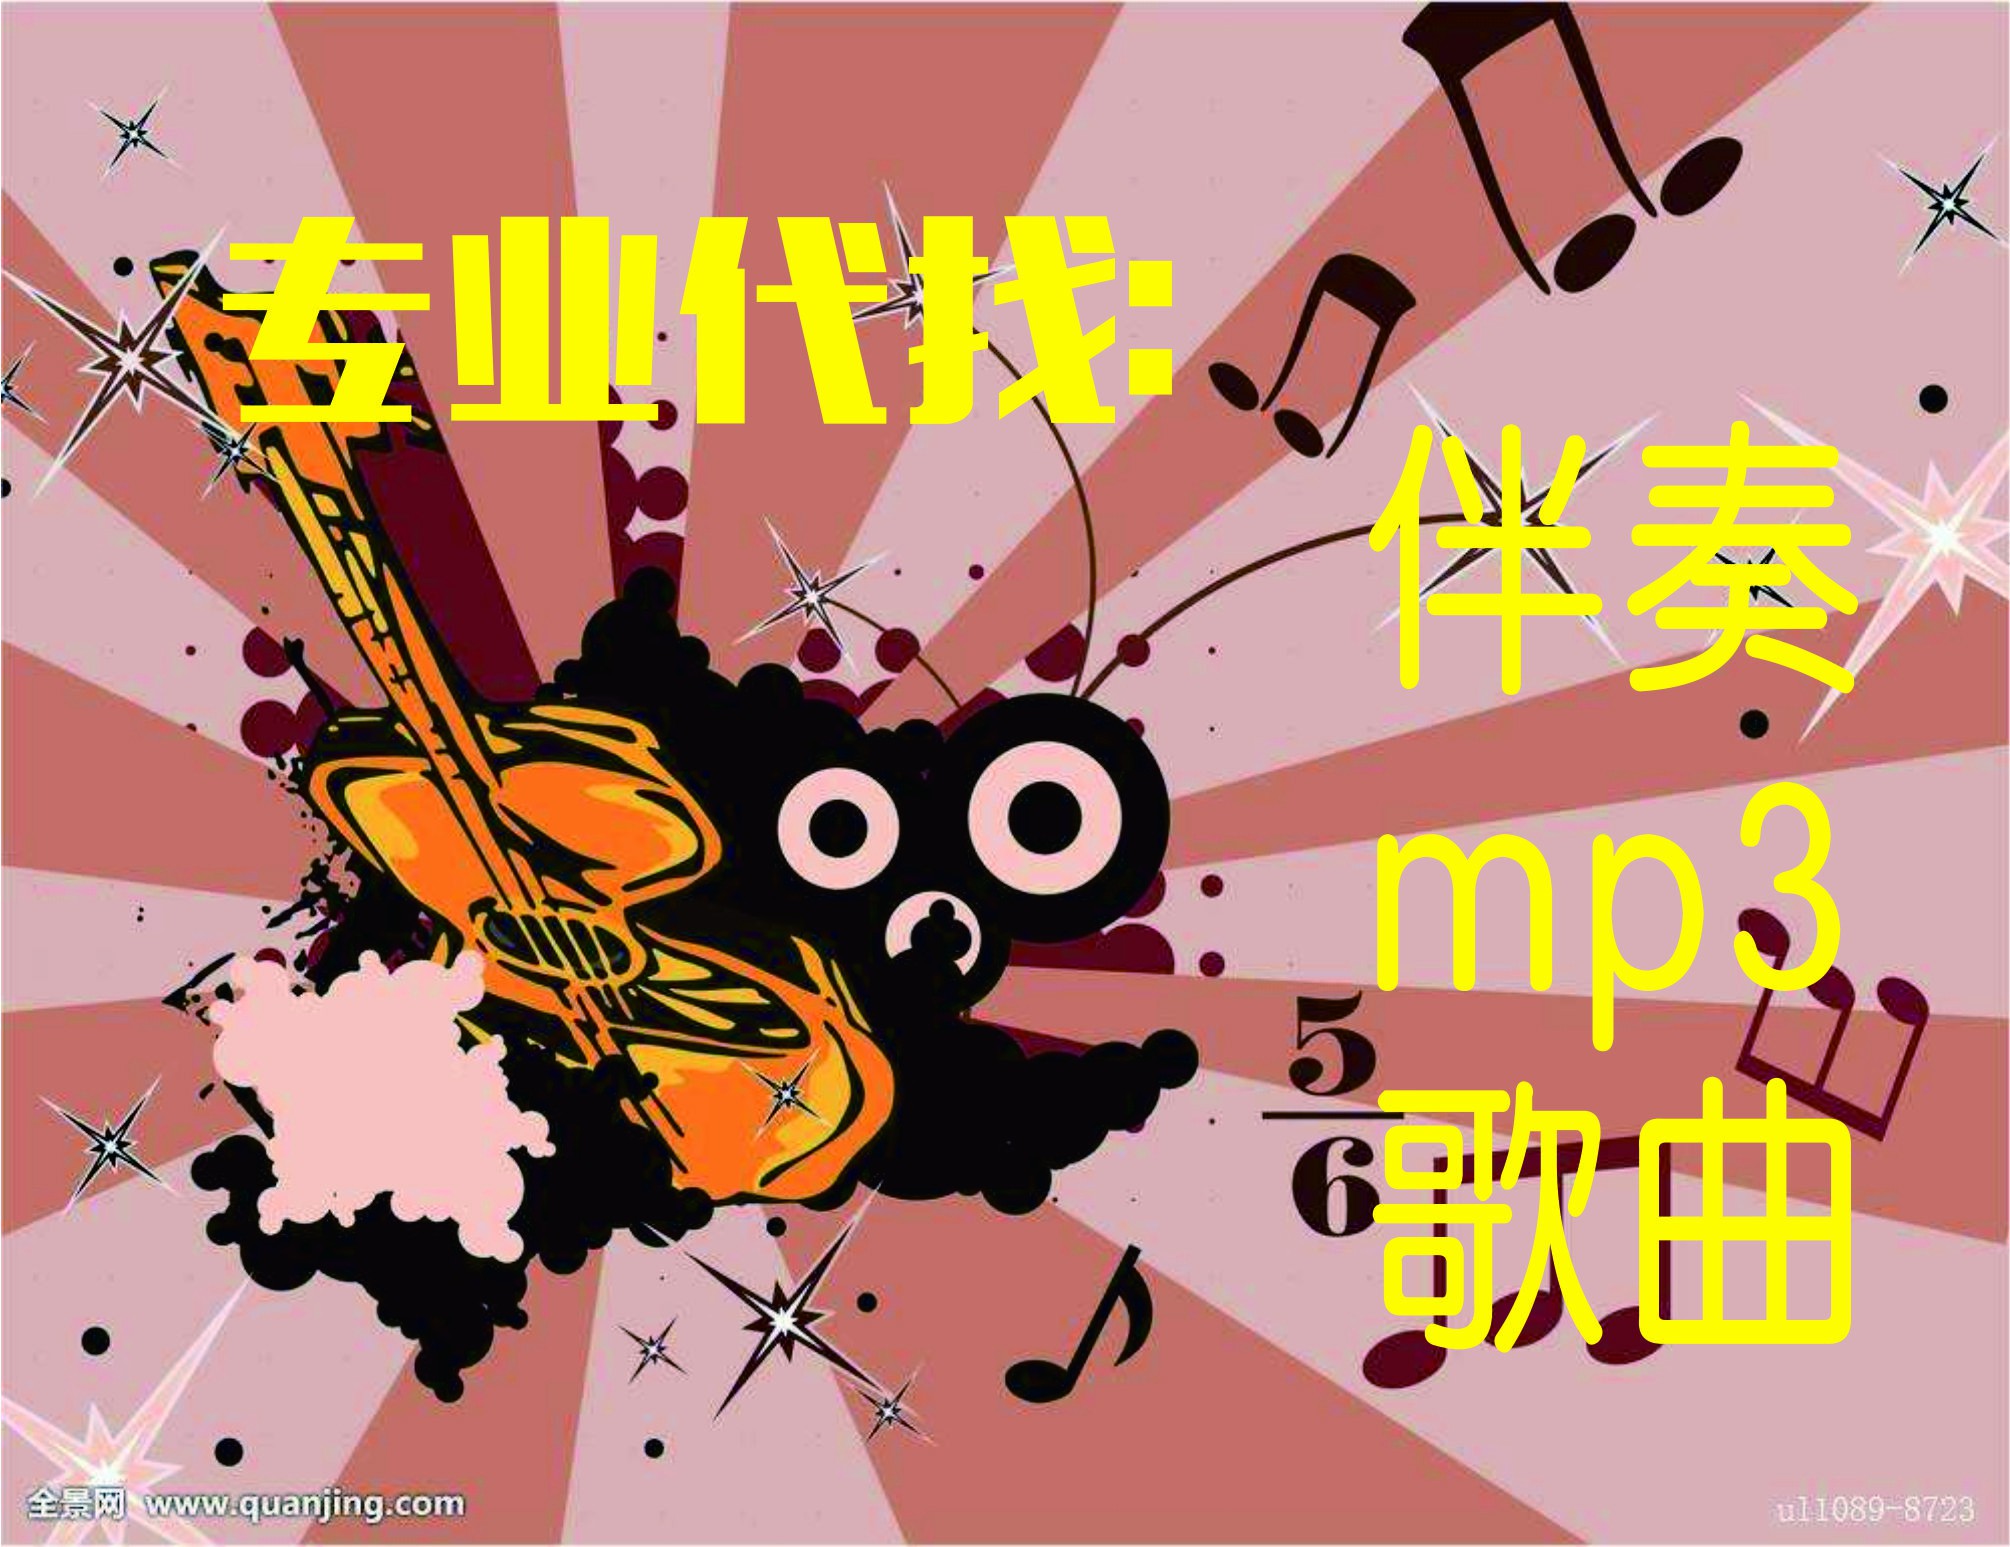 火箭少女101+上海彩虹室内合唱团 - 我要飞(炙热的我们) 伴奏